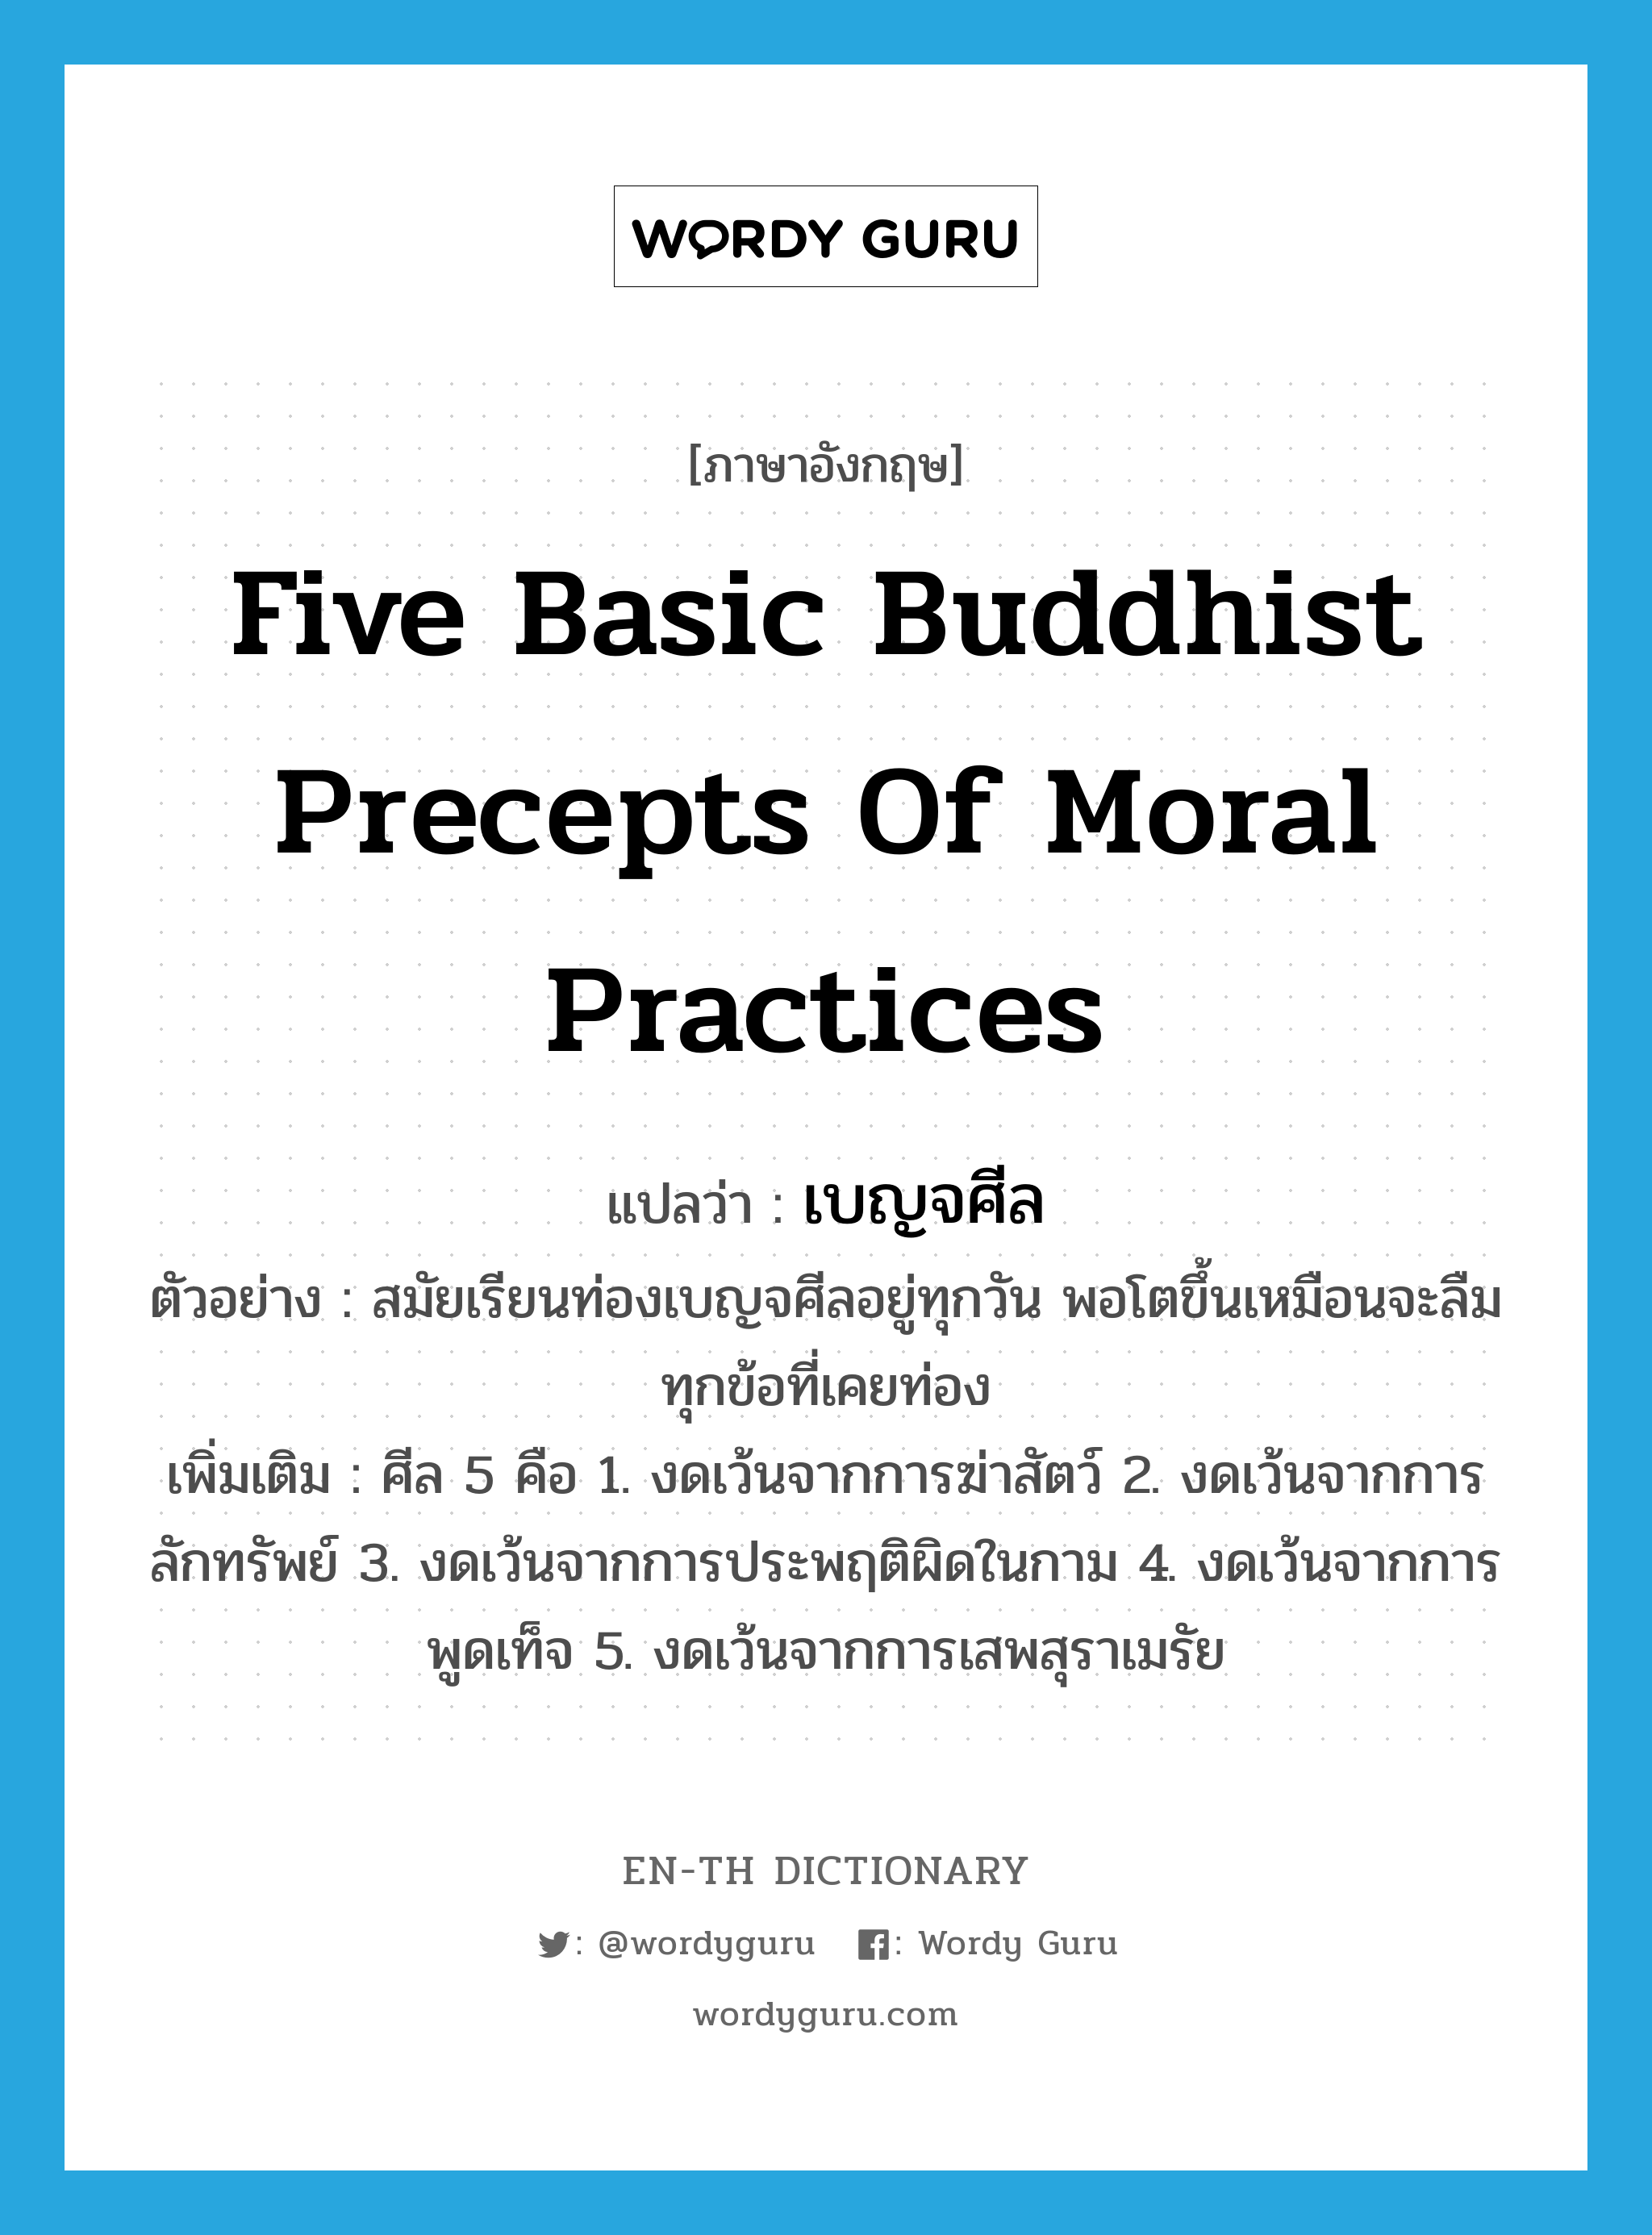 เบญจศีล ภาษาอังกฤษ?, คำศัพท์ภาษาอังกฤษ เบญจศีล แปลว่า five basic Buddhist precepts of moral practices ประเภท N ตัวอย่าง สมัยเรียนท่องเบญจศีลอยู่ทุกวัน พอโตขึ้นเหมือนจะลืมทุกข้อที่เคยท่อง เพิ่มเติม ศีล 5 คือ 1. งดเว้นจากการฆ่าสัตว์ 2. งดเว้นจากการลักทรัพย์ 3. งดเว้นจากการประพฤติผิดในกาม 4. งดเว้นจากการพูดเท็จ 5. งดเว้นจากการเสพสุราเมรัย หมวด N